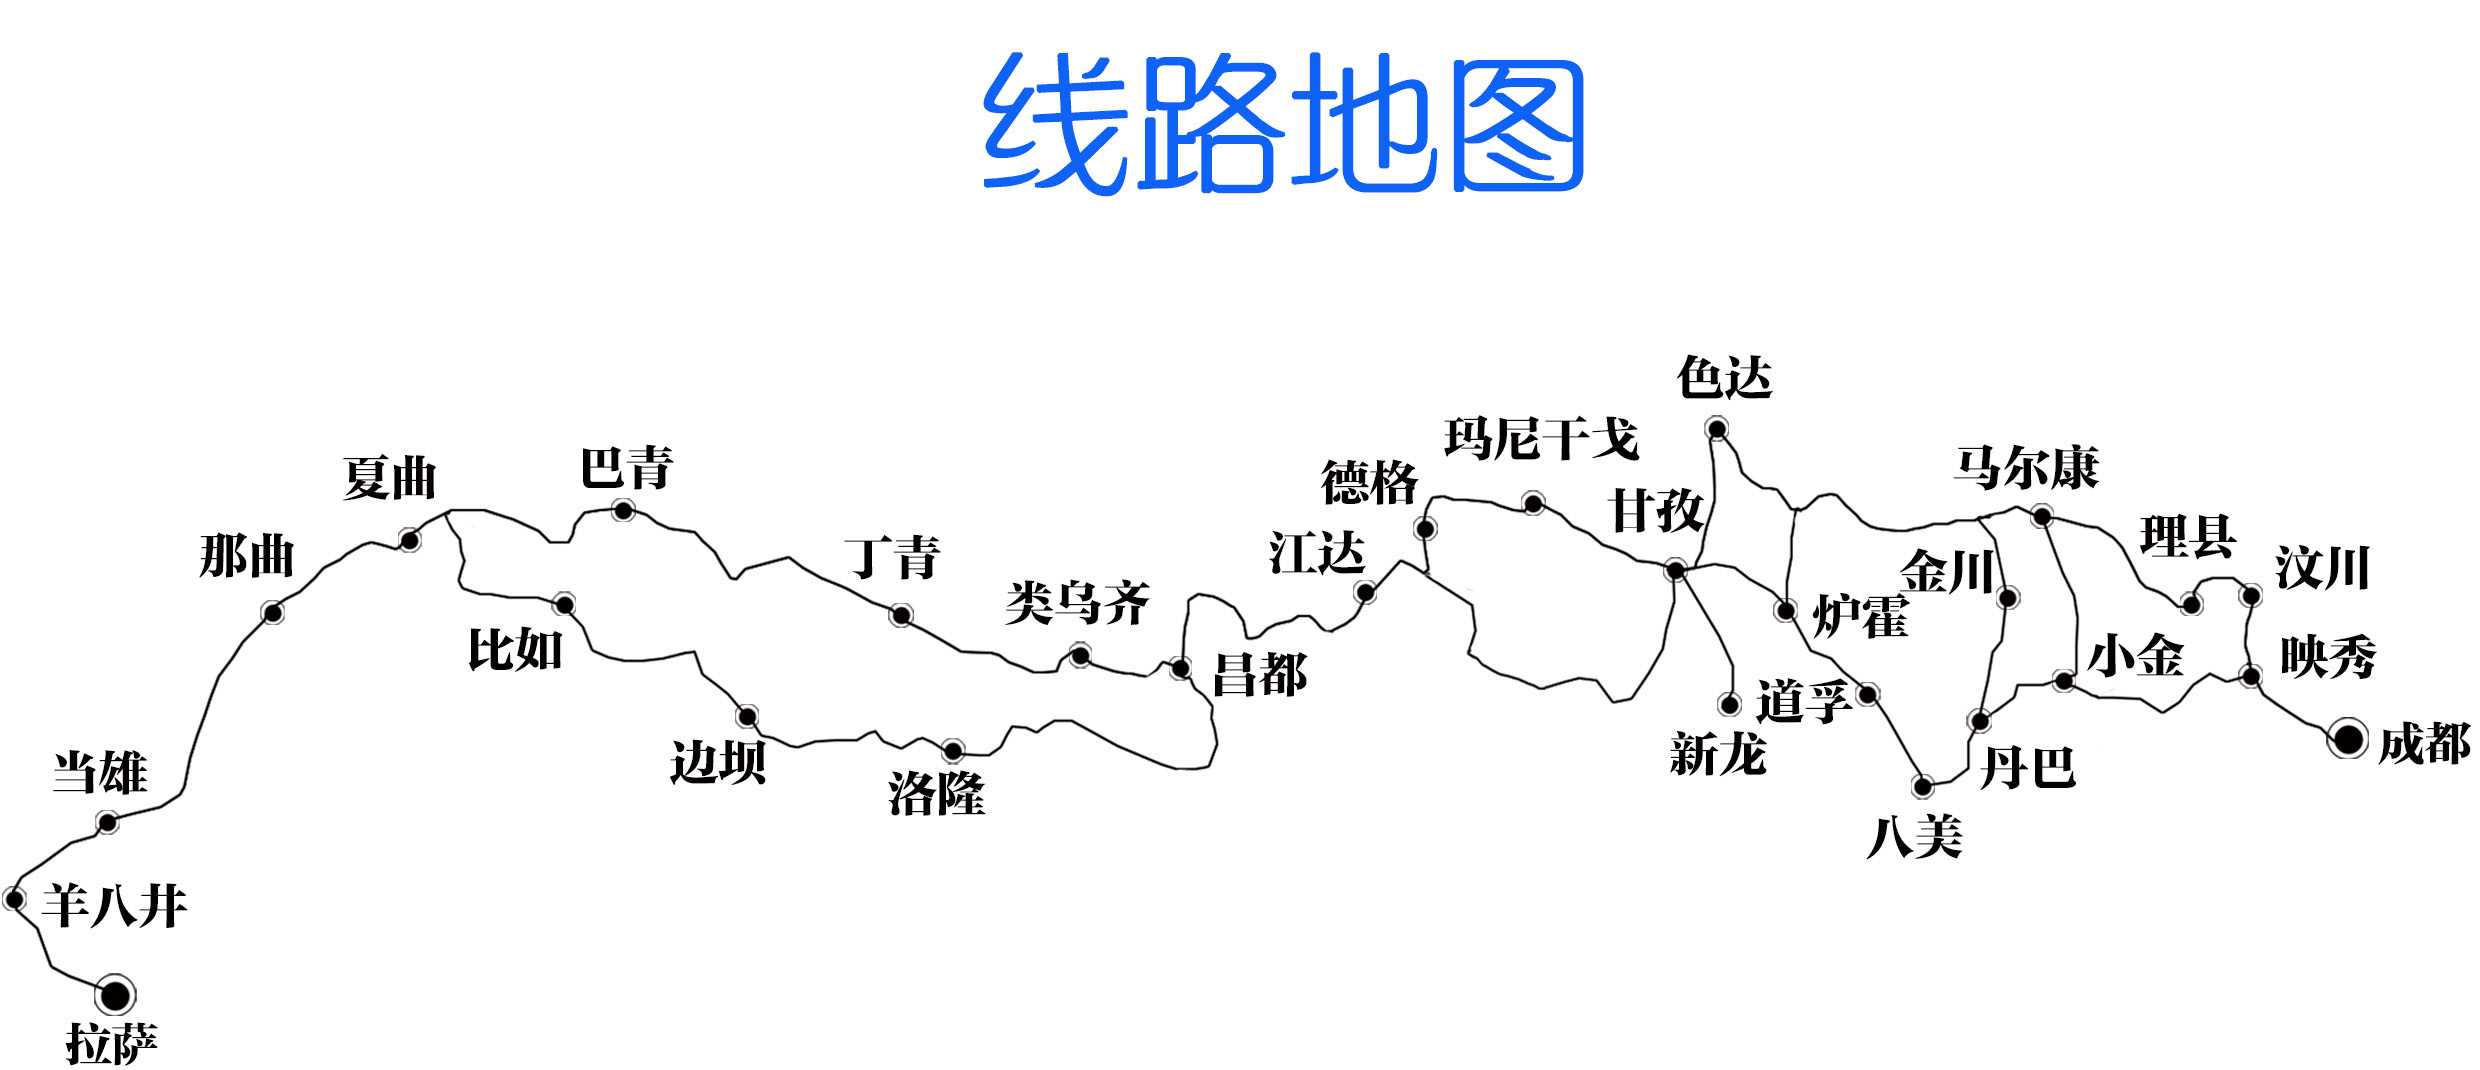 317川藏北线海拔图图片